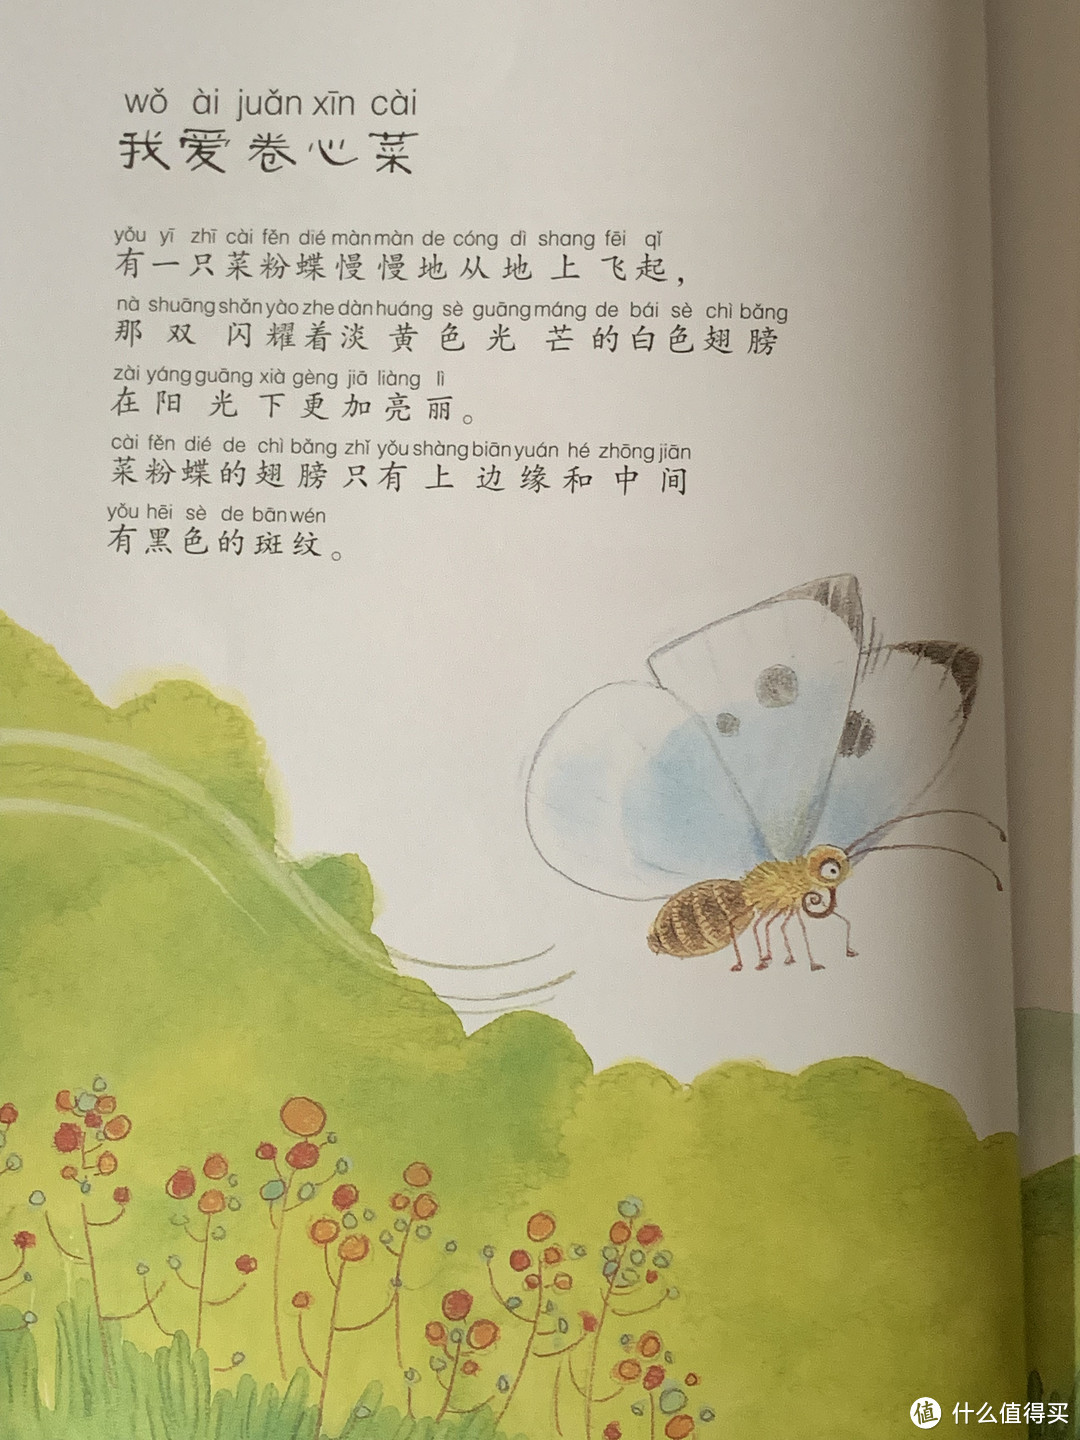 儿童急走追黄蝶，飞入菜花无处寻-小评法《法布尔昆虫记（儿童彩图版）》